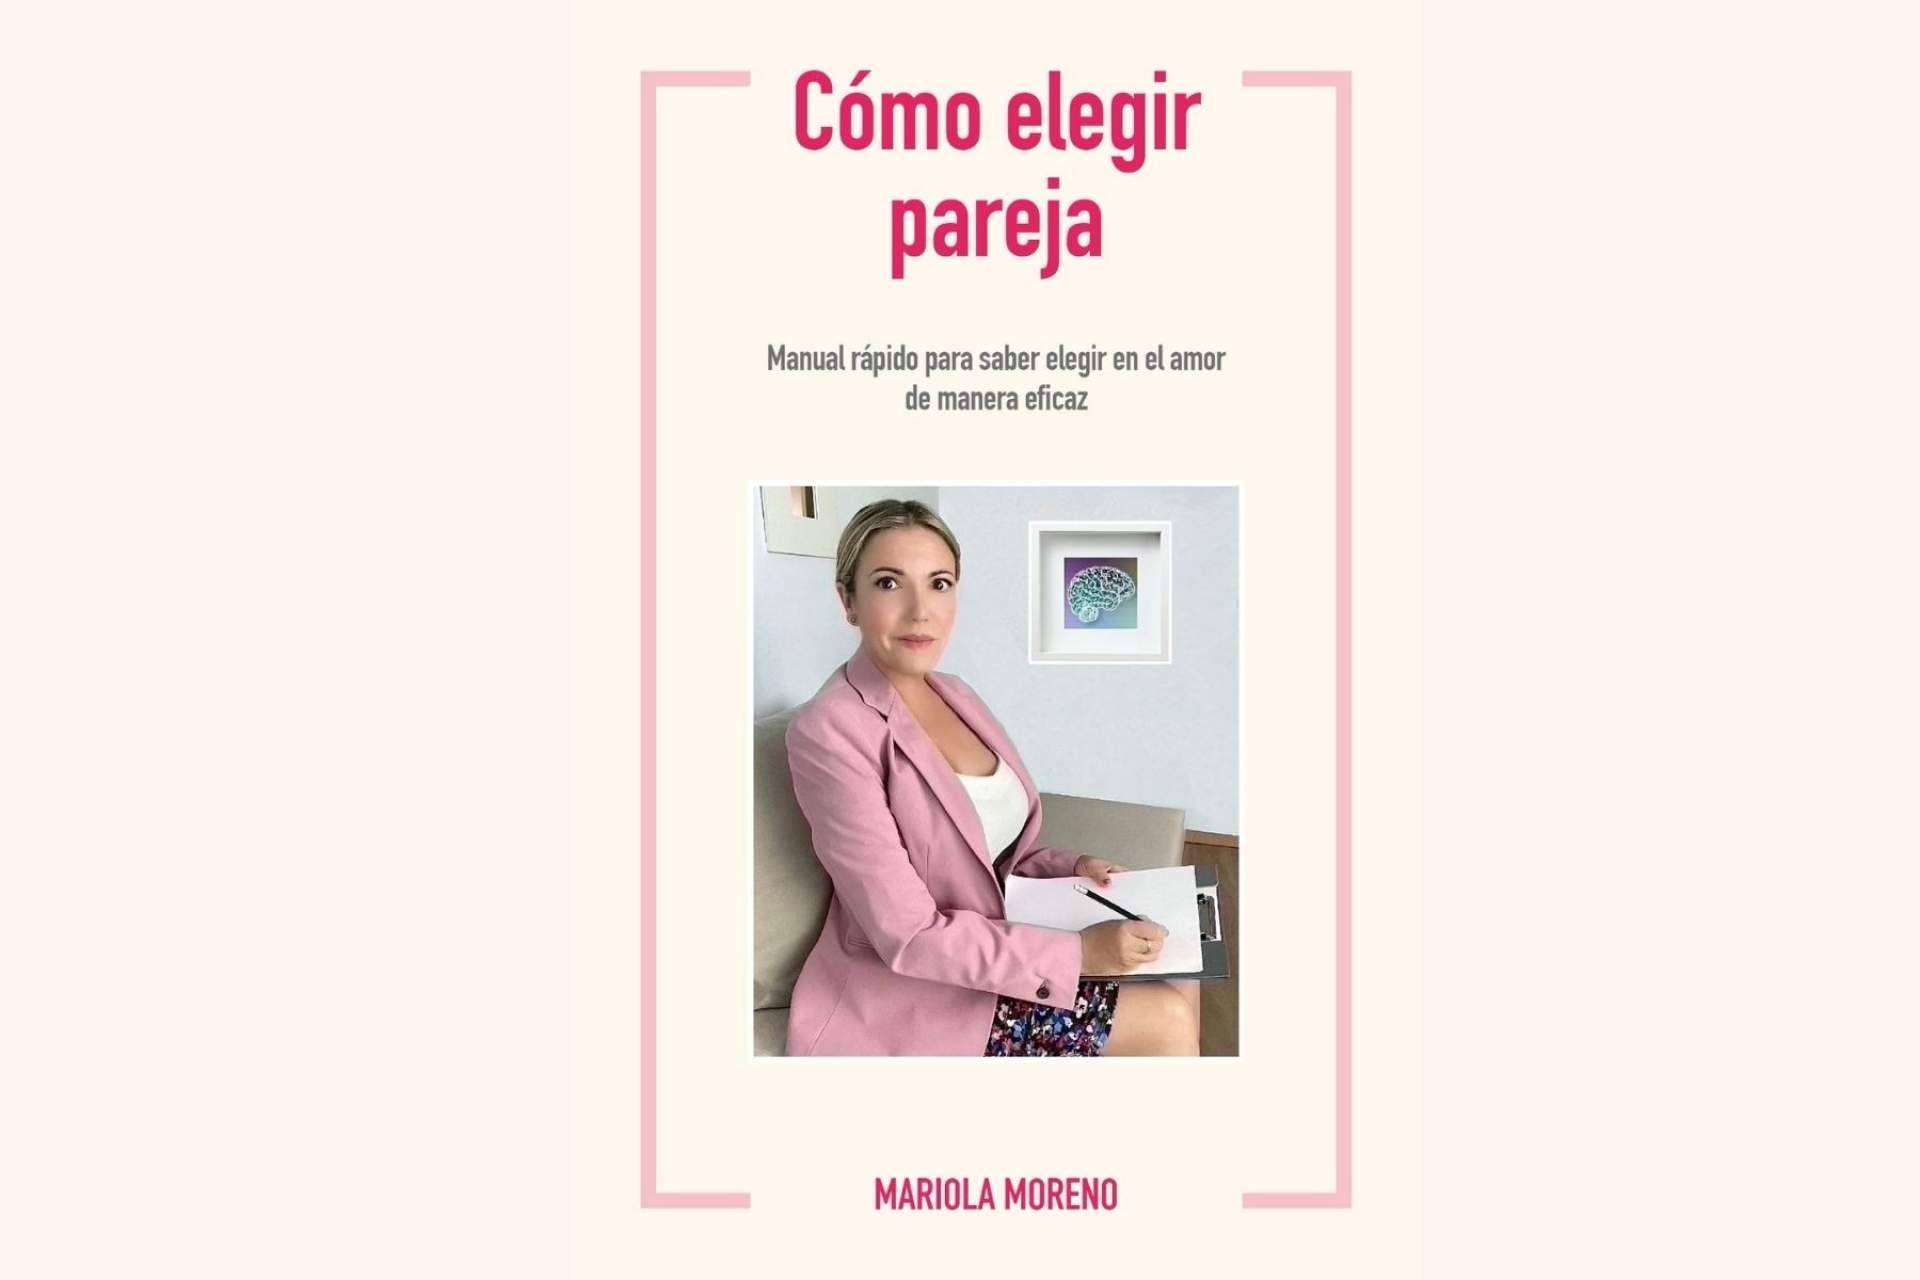 El manual de Mariola Moreno sobre psicología y amor